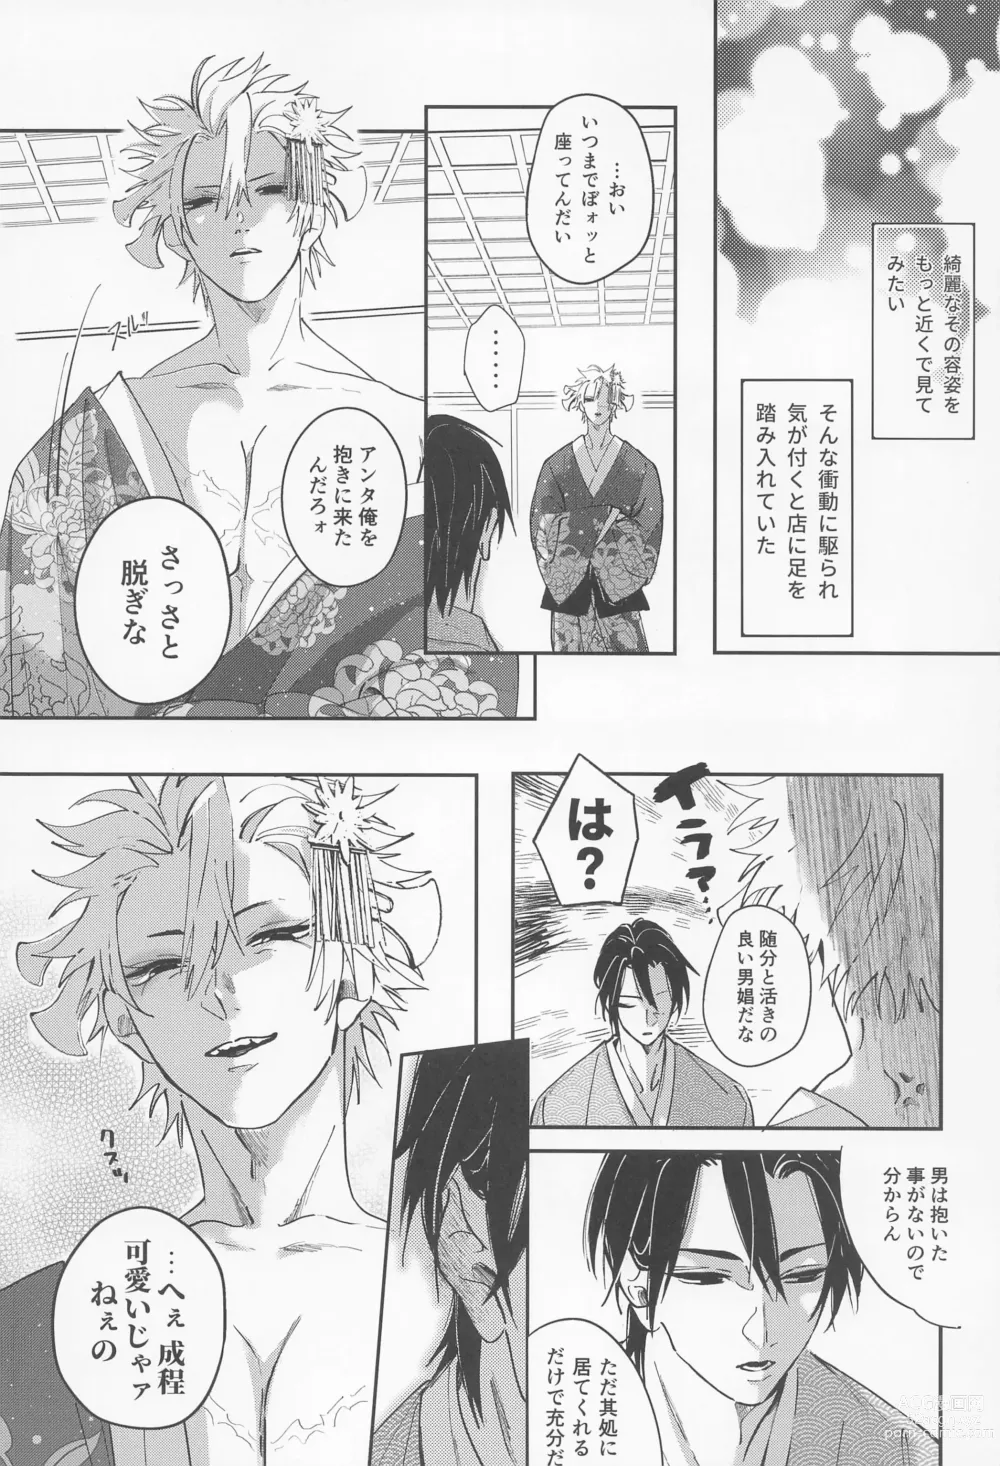 Page 33 of doujinshi Utakata  First volume